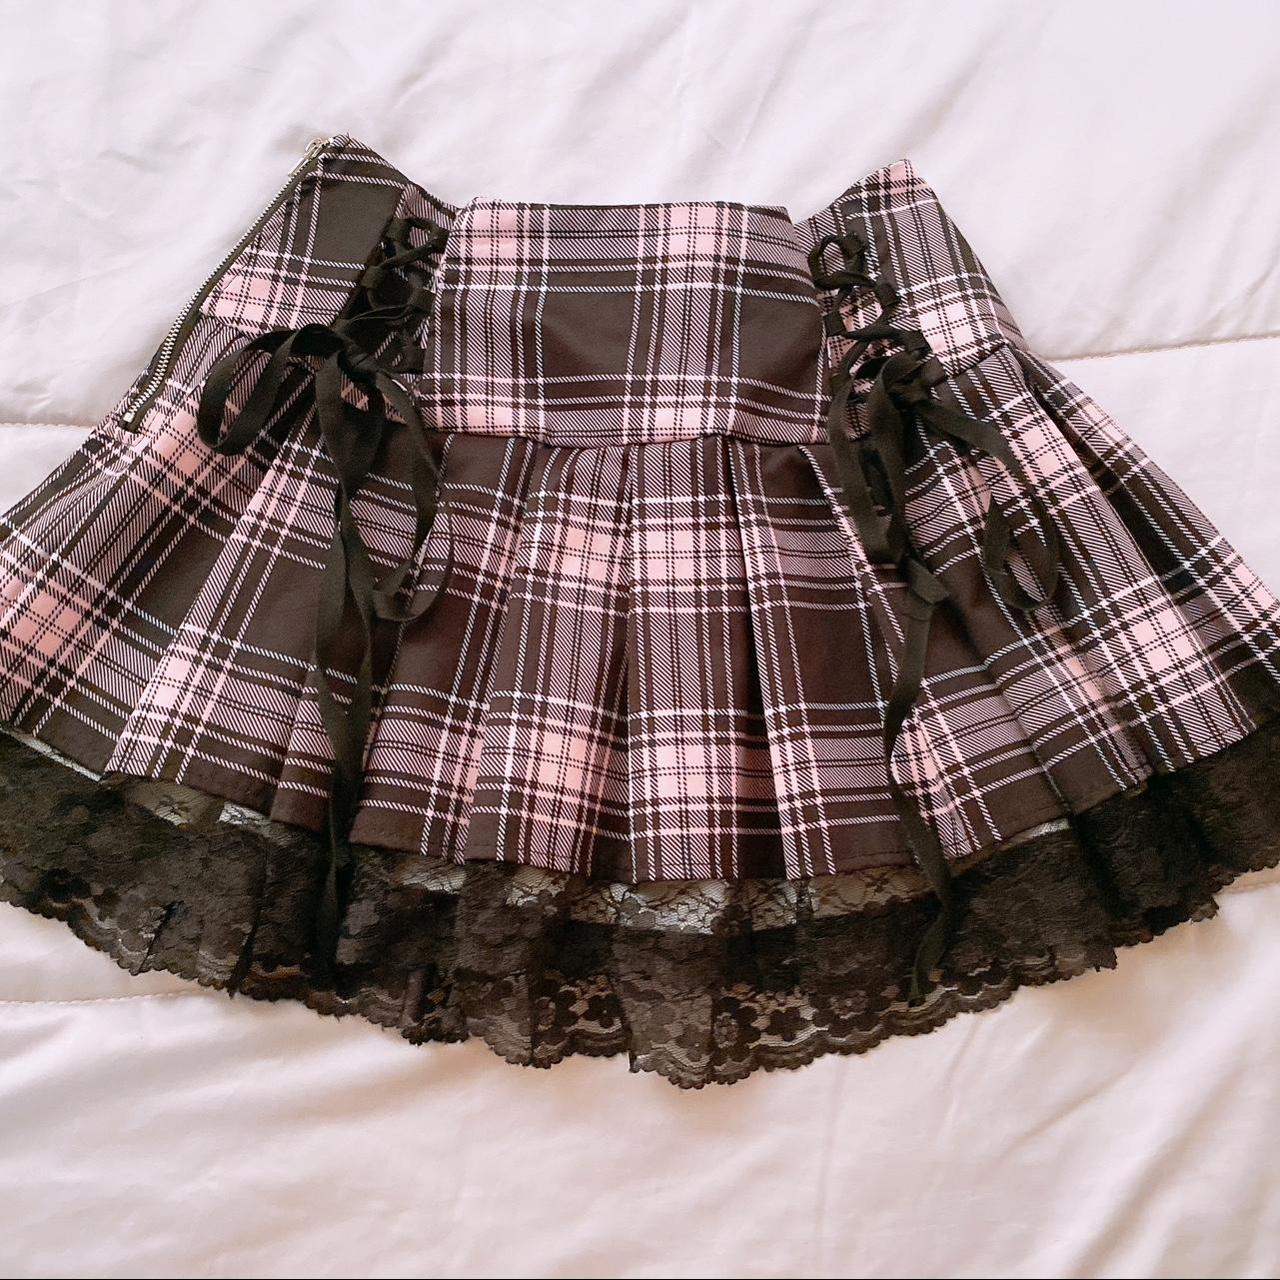 Women's Skirt